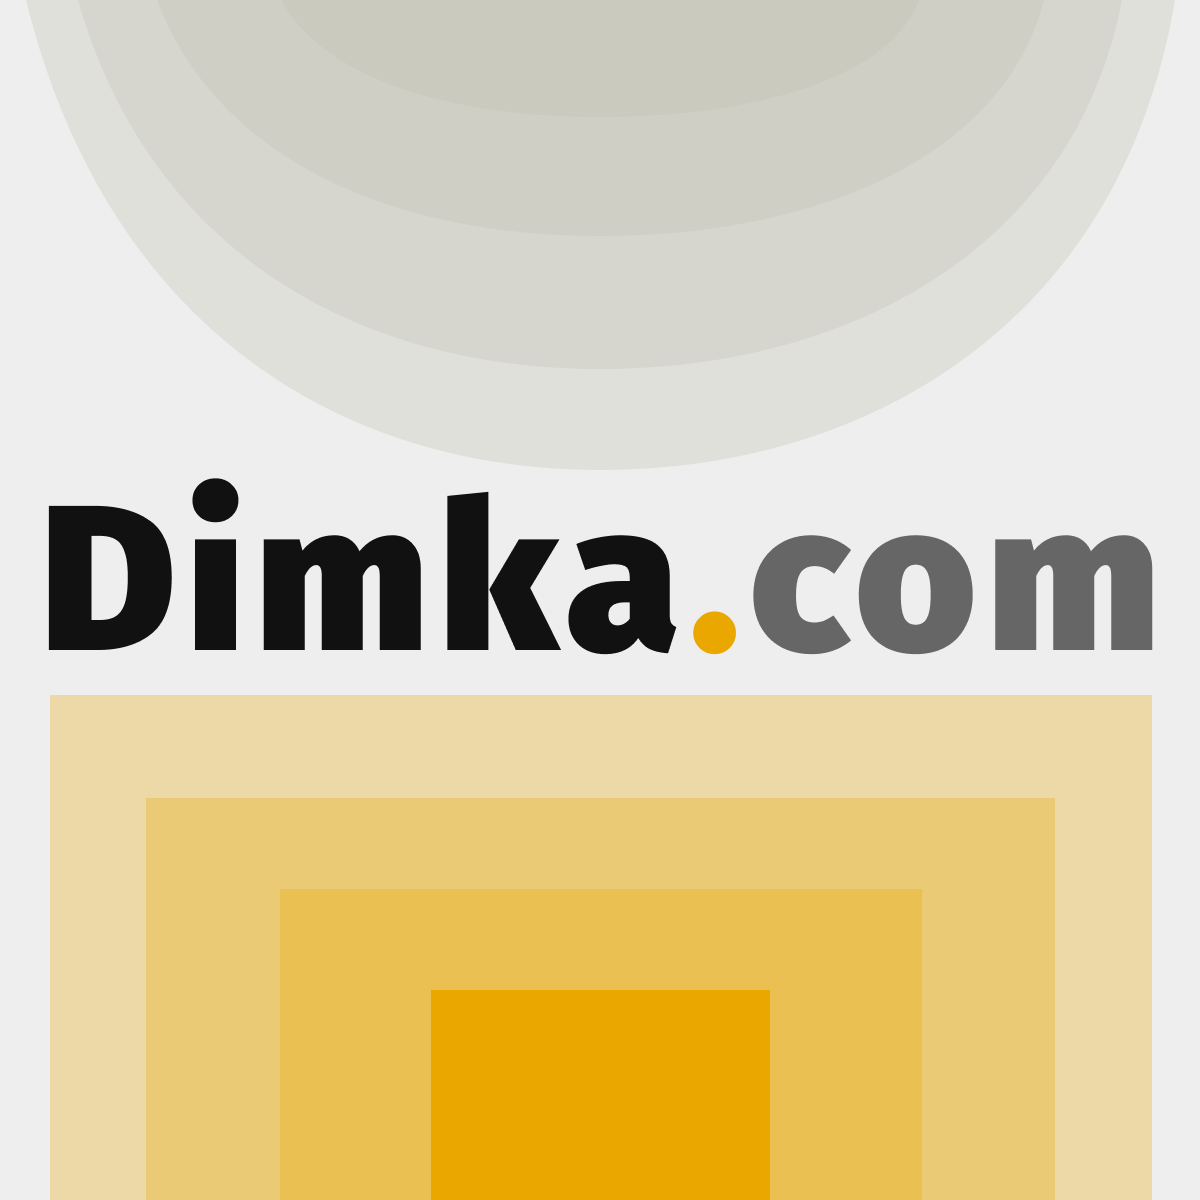 (c) Dimka.com